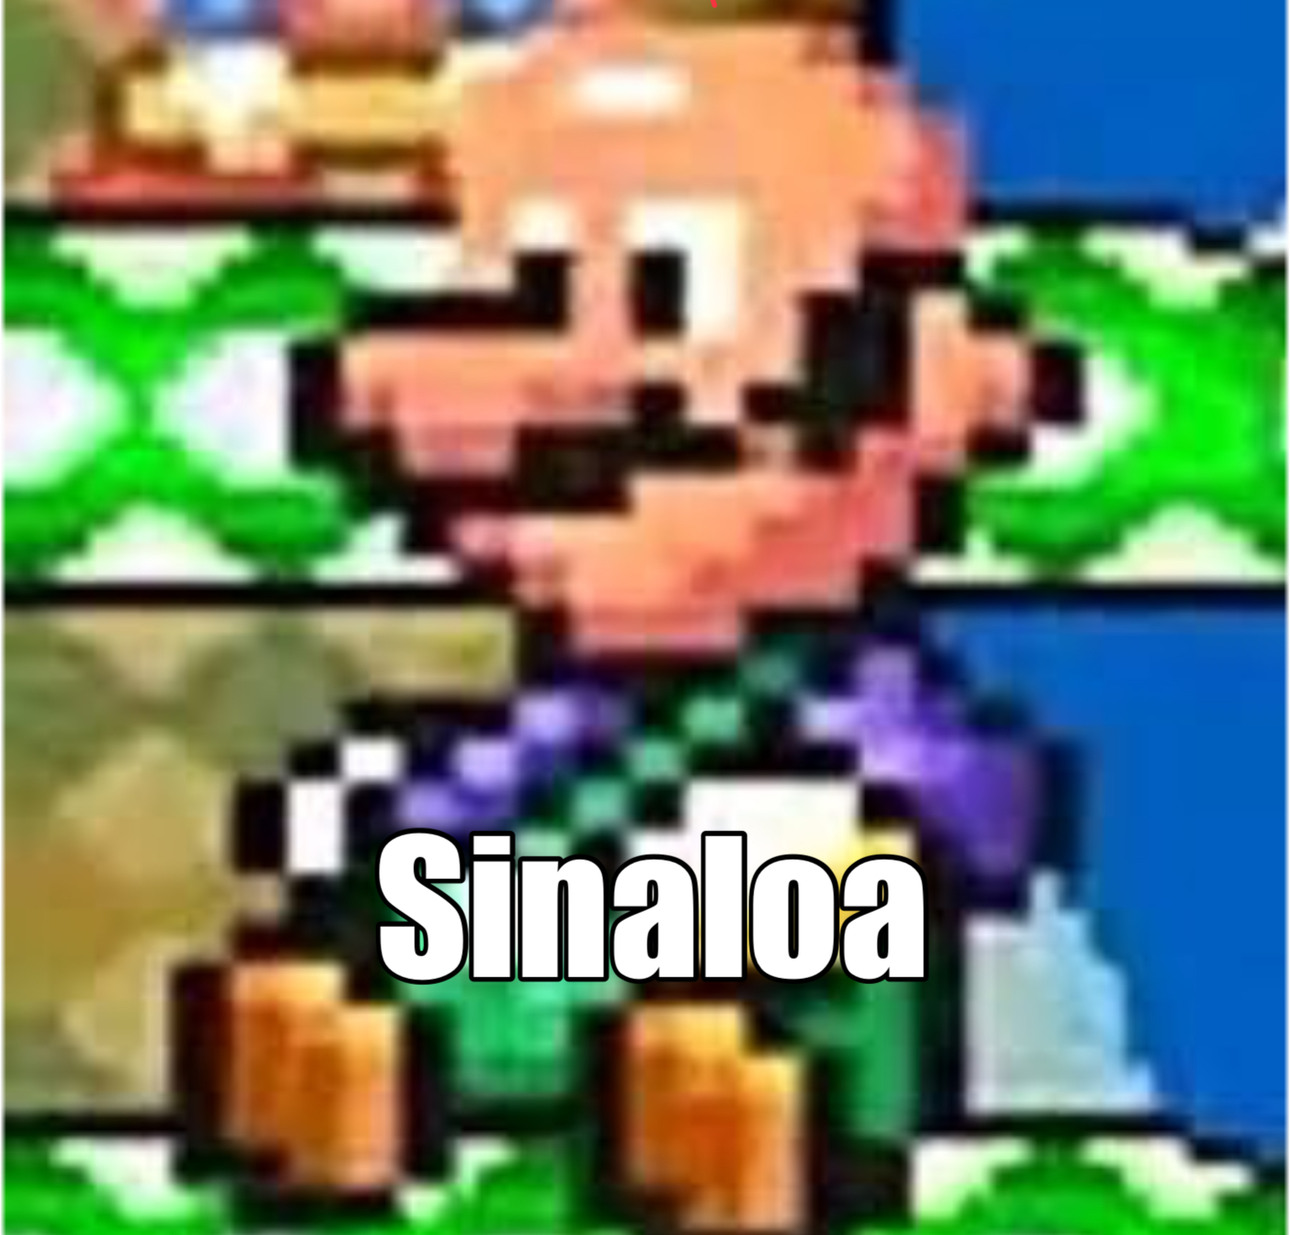 Luigi pelon - meme